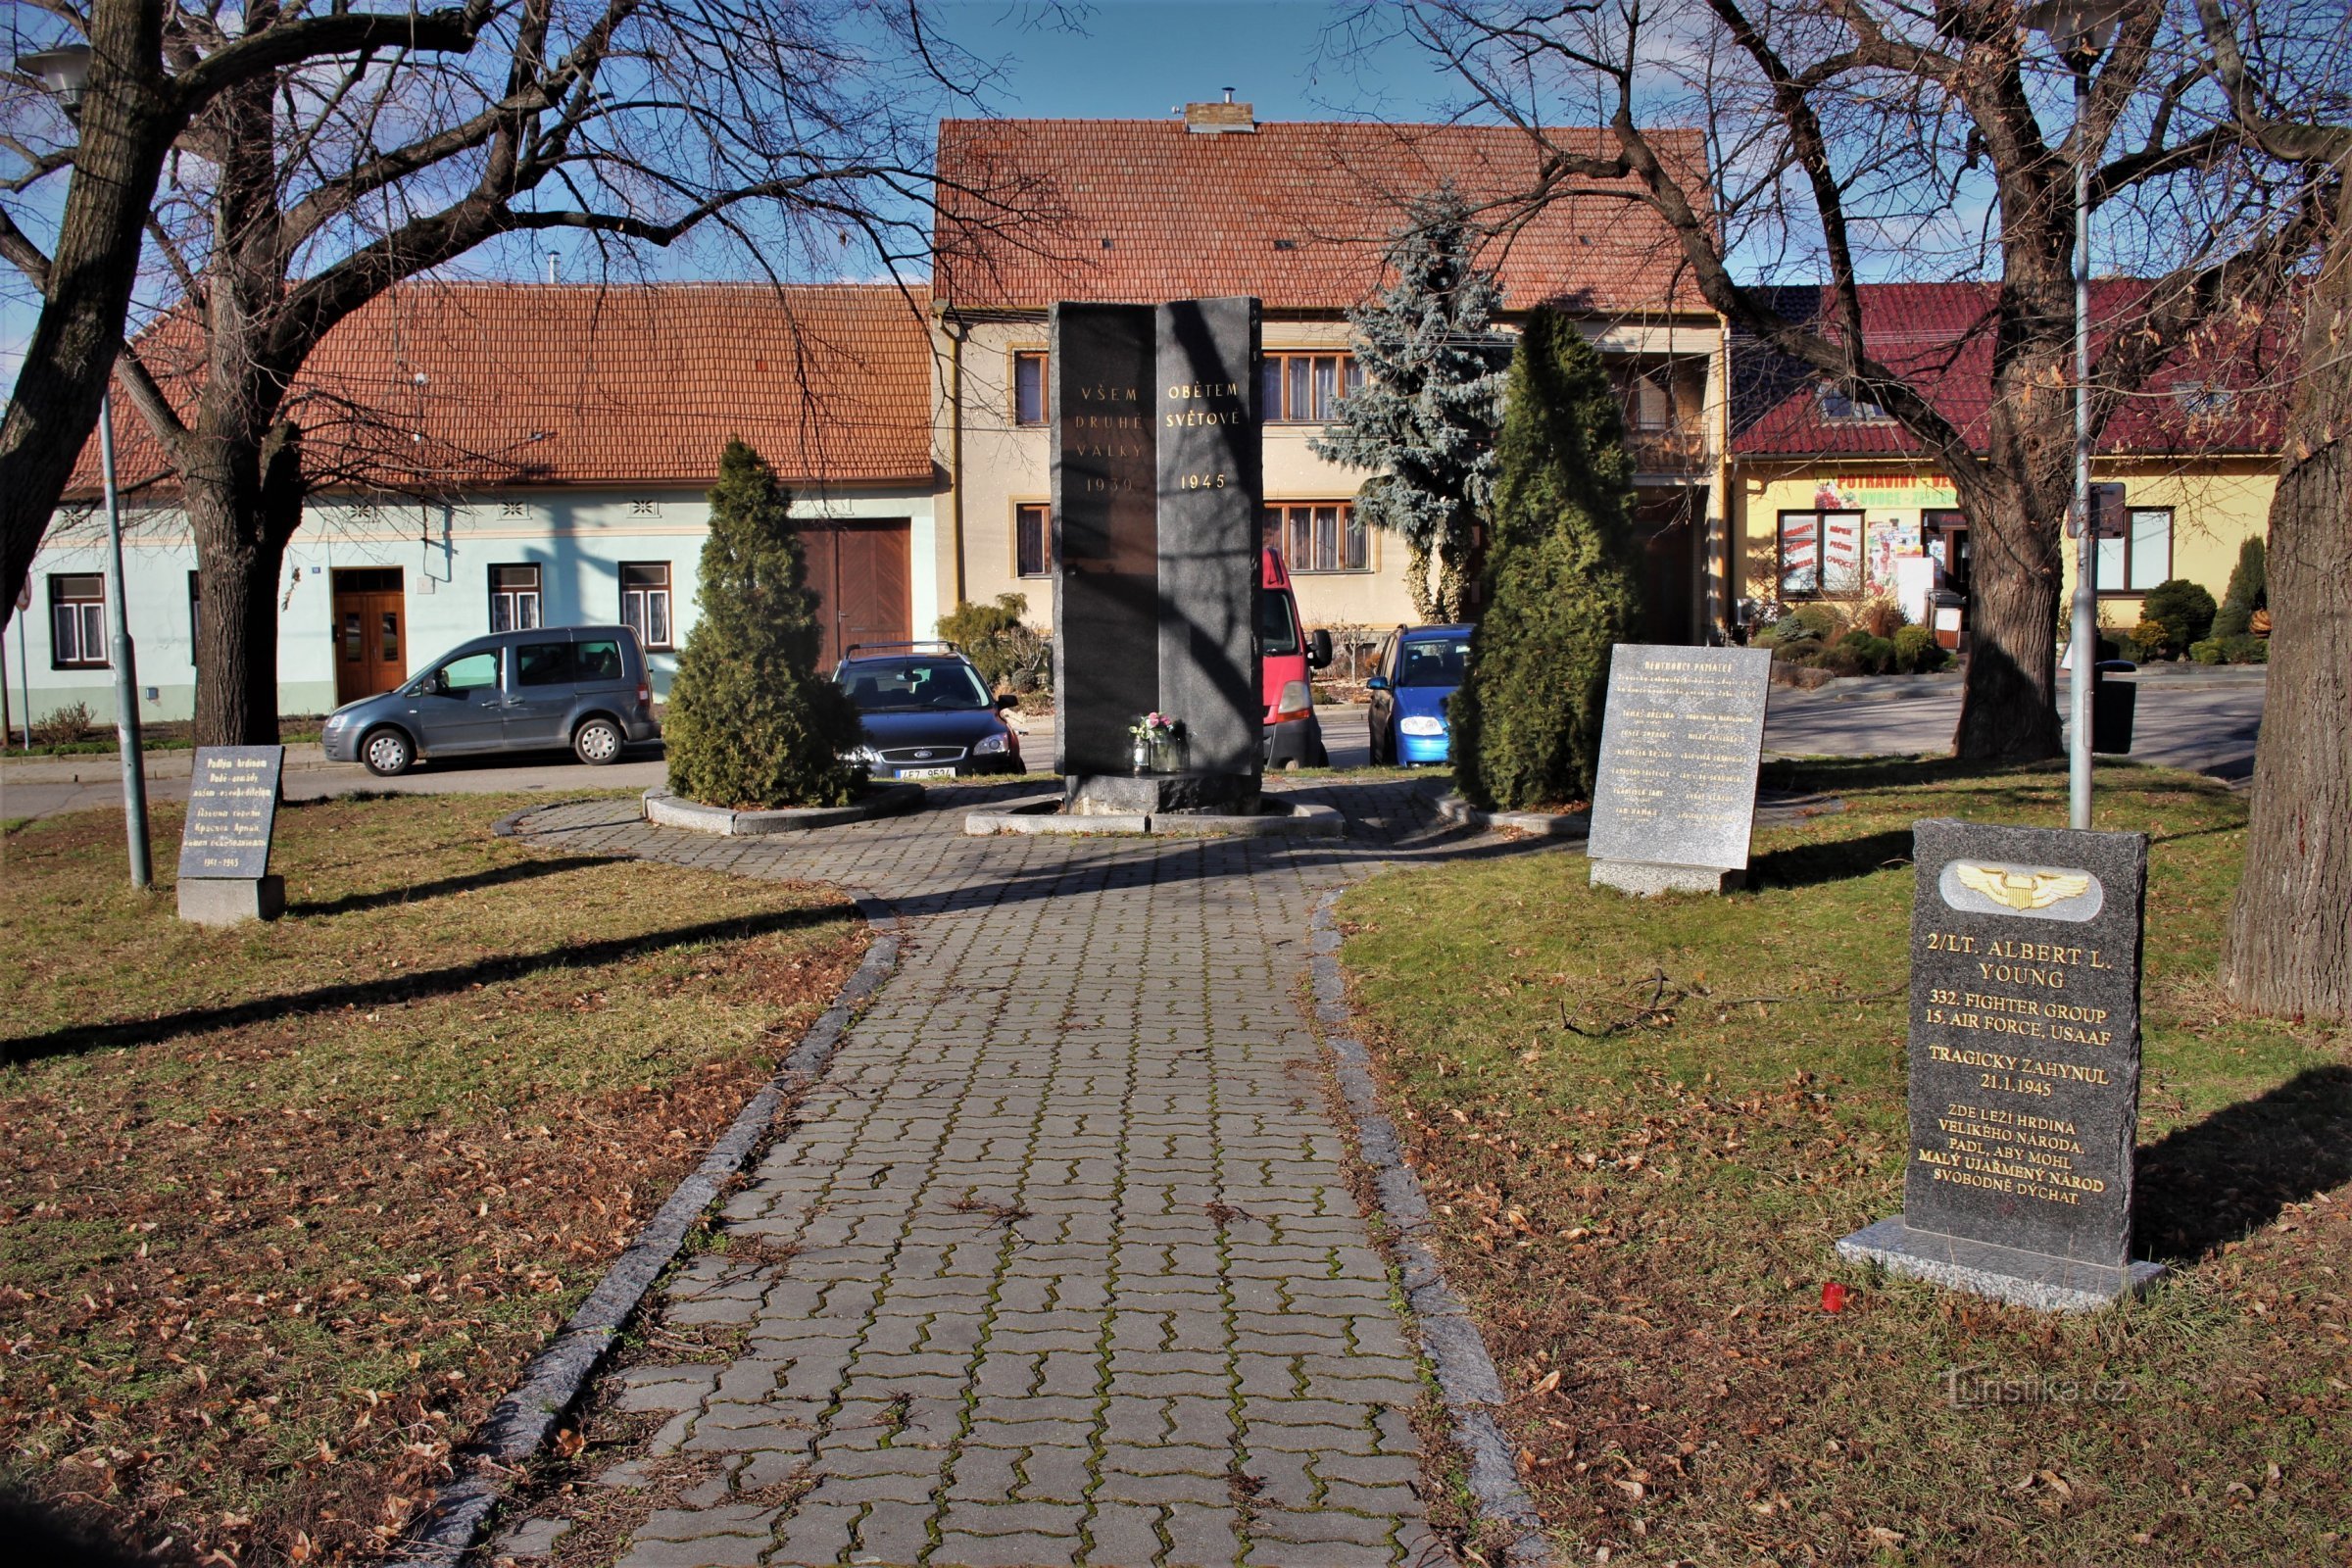 Spomenik je del bogoslužnega prostora na Náměstí Svobody v središču vasi